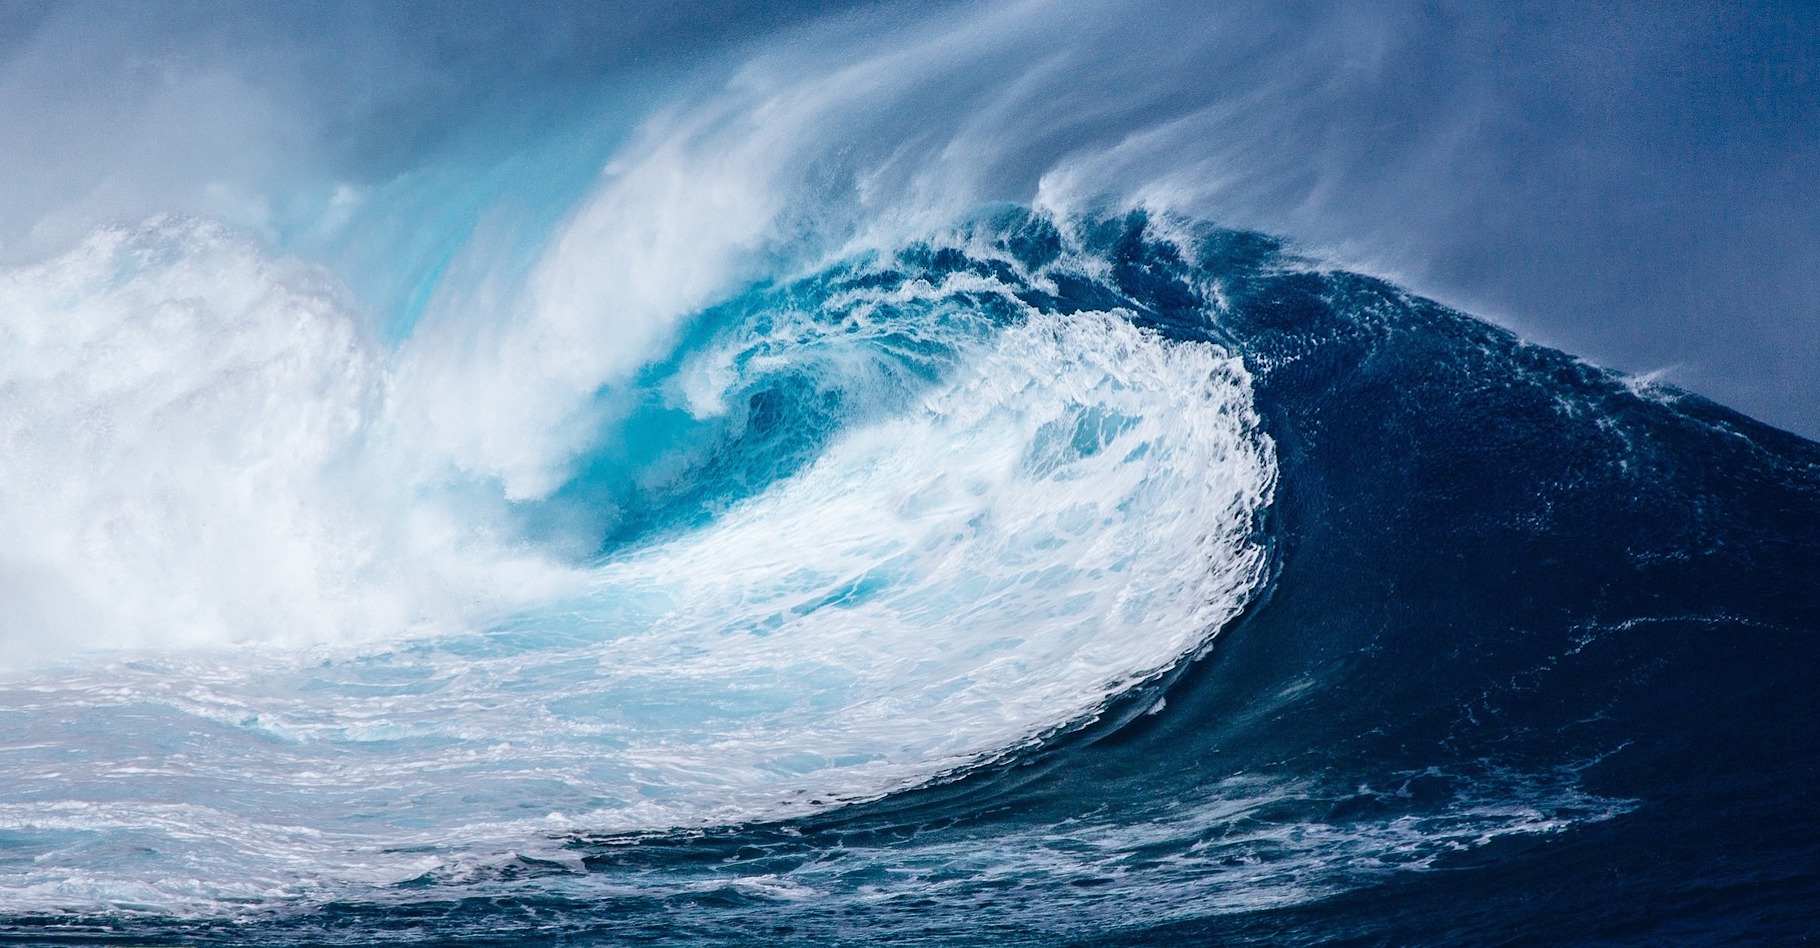 Des chercheurs pensent que le ralentissement de la circulation océanique méridienne dans l’Atlantique pourrait entraîner une chute des températures en Europe et, à l’inverse, un réchauffement des eaux de la côte est des États-Unis. © NeuPaddy, Pixabay, CC0 Creative Commons